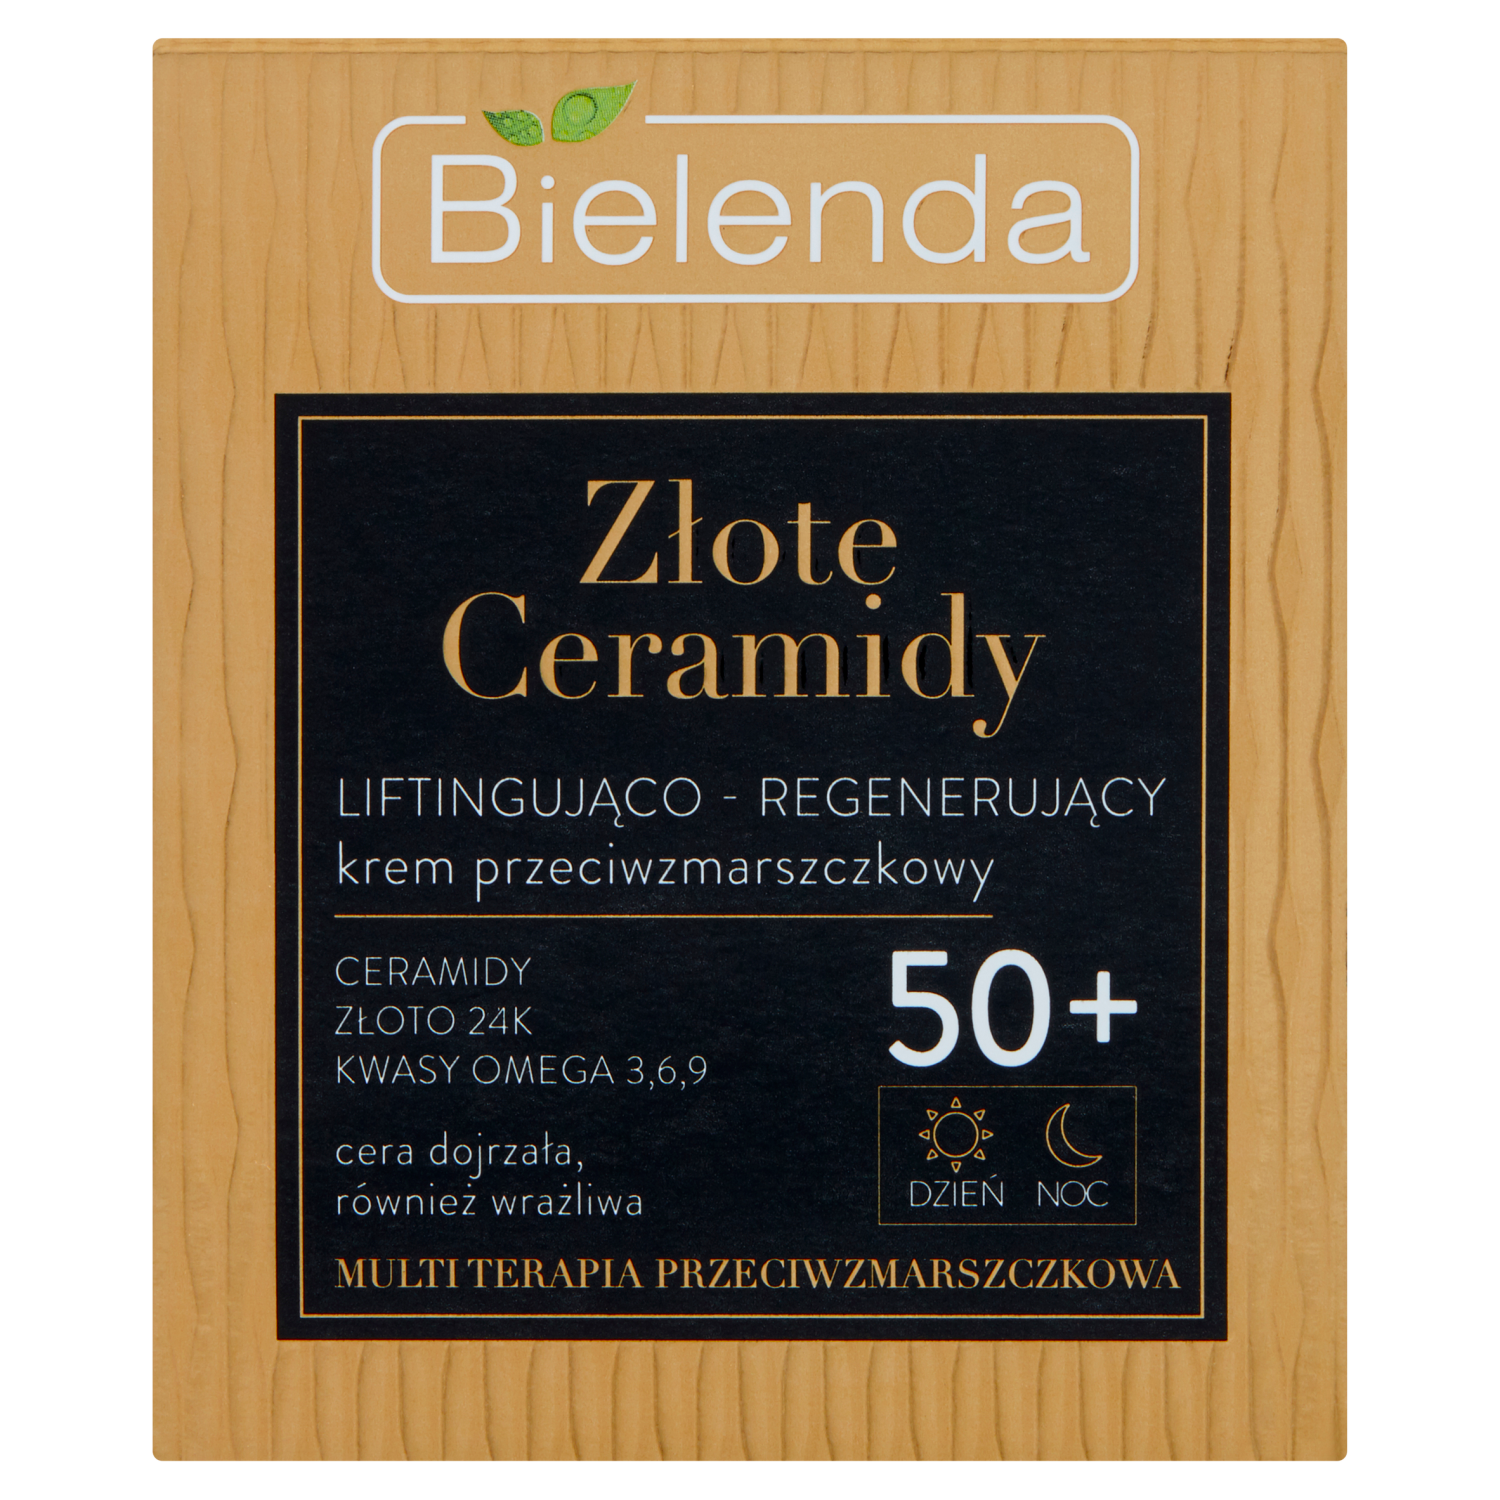 Bielenda Złote Ceramidy дневной и ночной крем для лица против морщин 50+, 50 мл